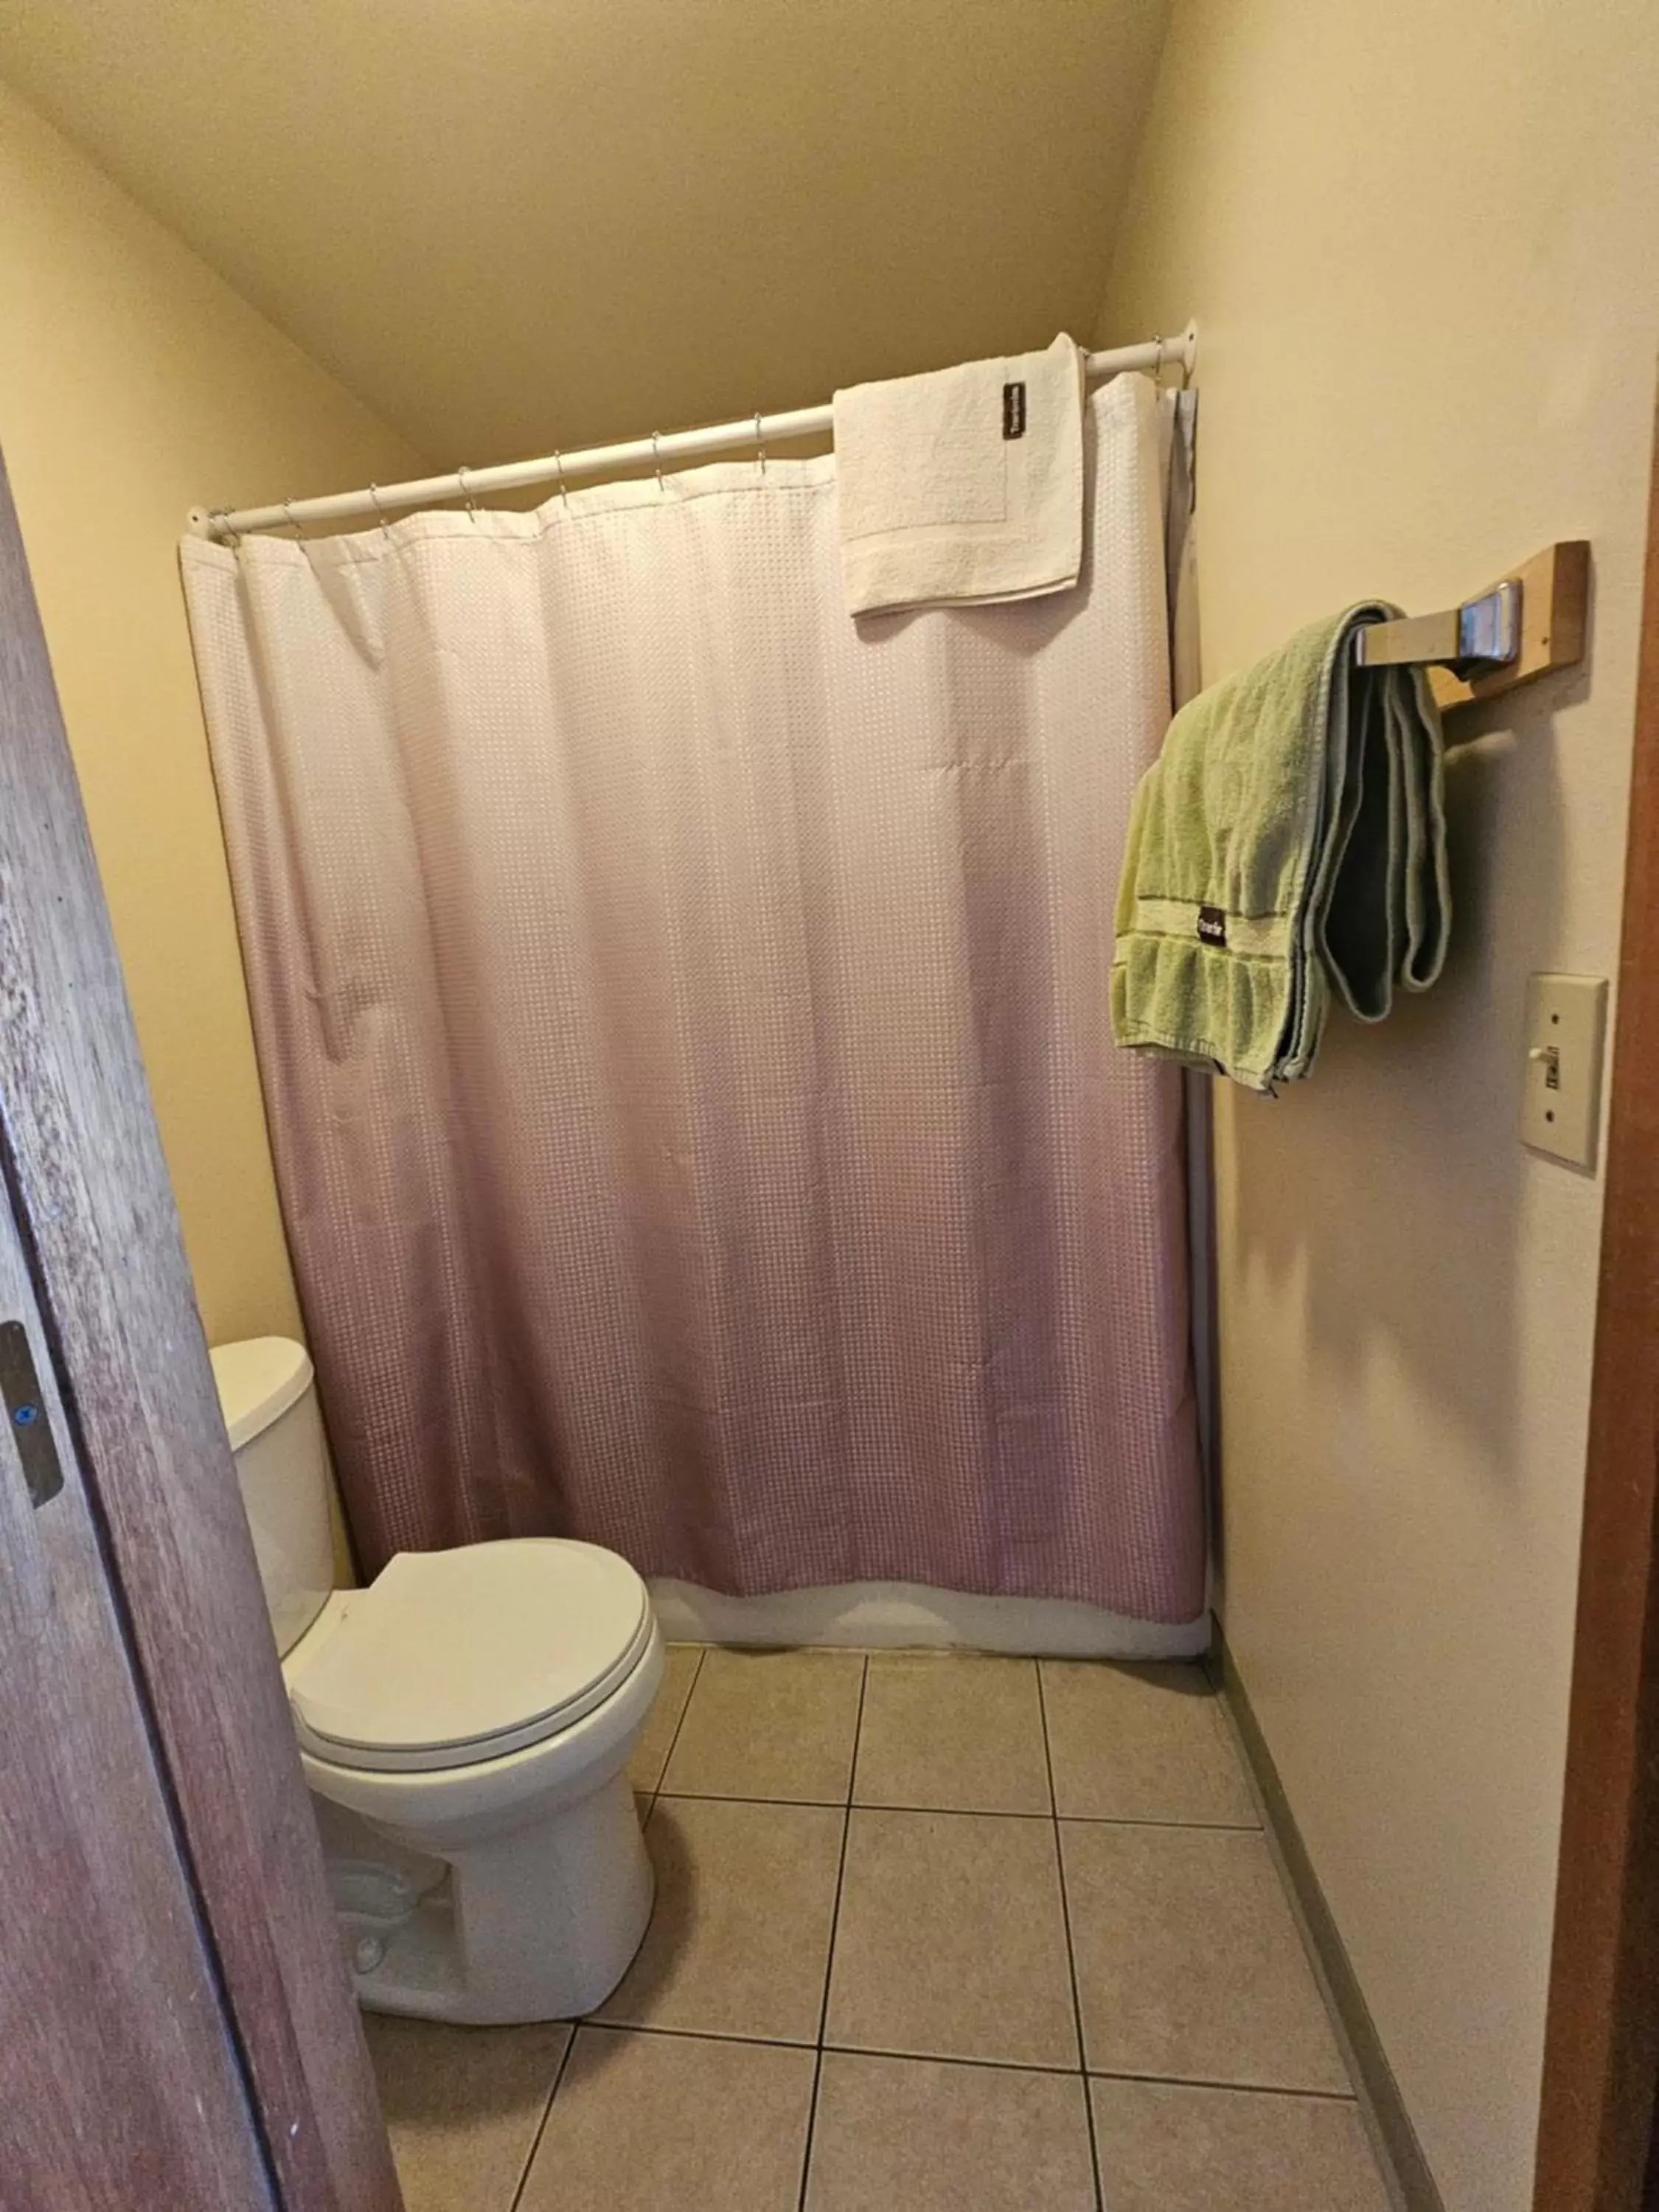 Toilet, Bathroom in Cle Elum Travelers Inn